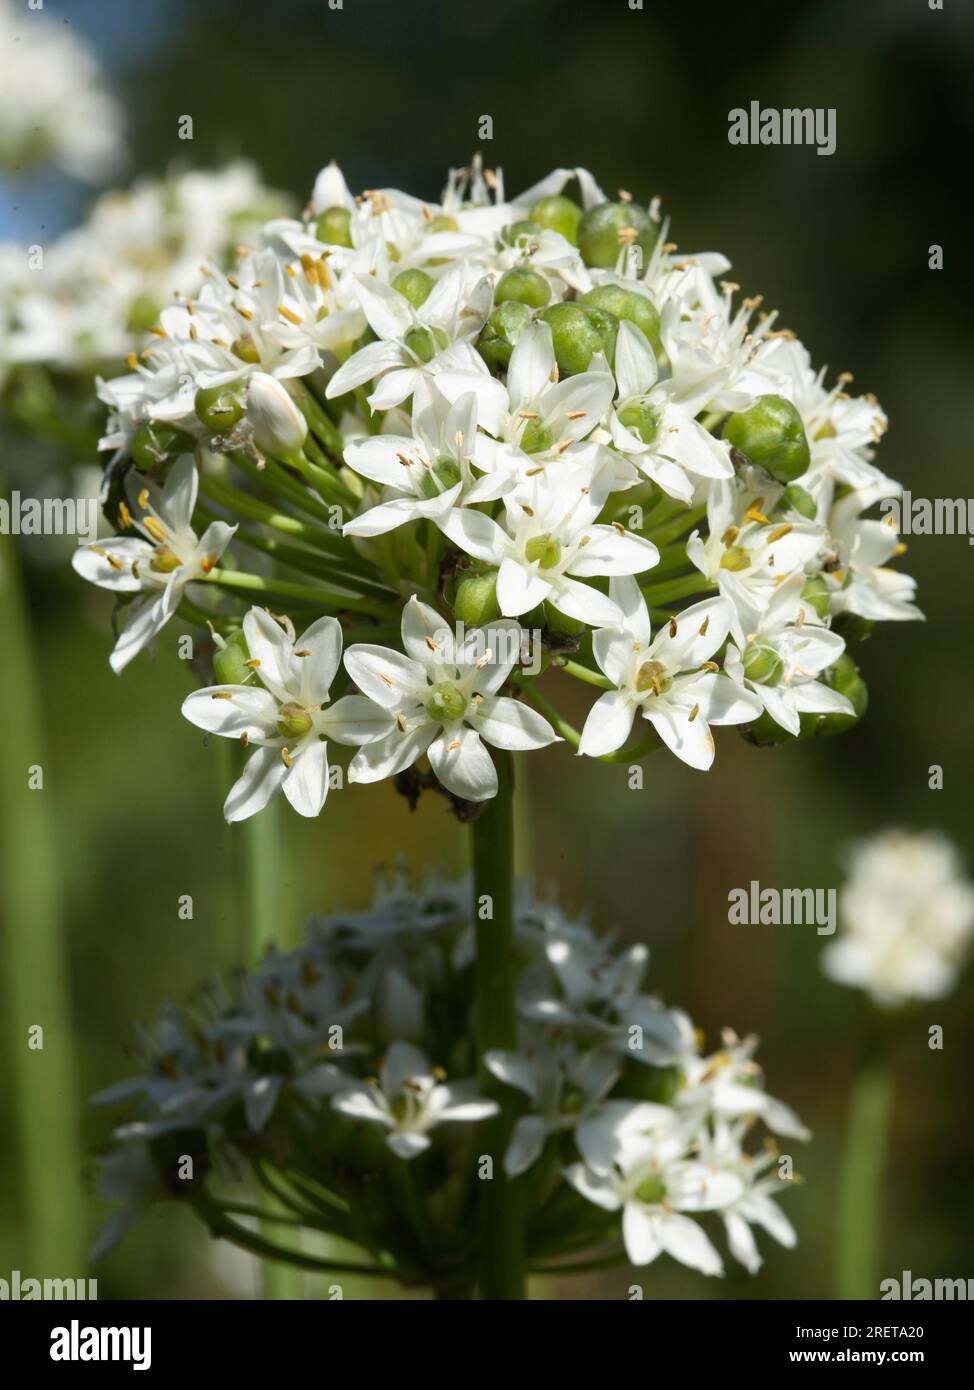 'New Belt' - Chive Garlic Chives (Allium tuberosum) Stock Photo